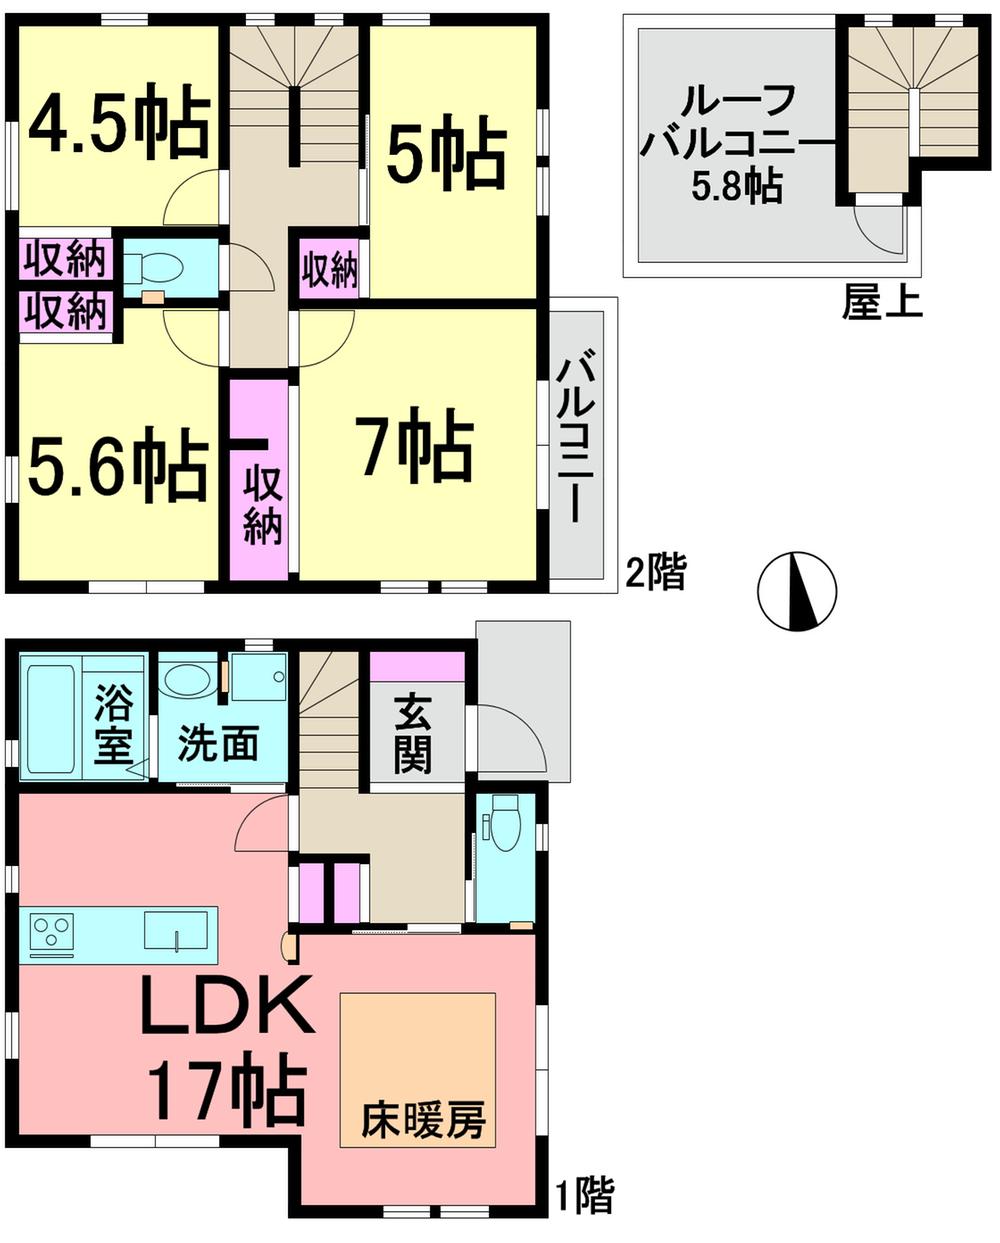 Floor plan. (A Building), Price 50,958,000 yen, 4LDK, Land area 82.85 sq m , Building area 98.11 sq m